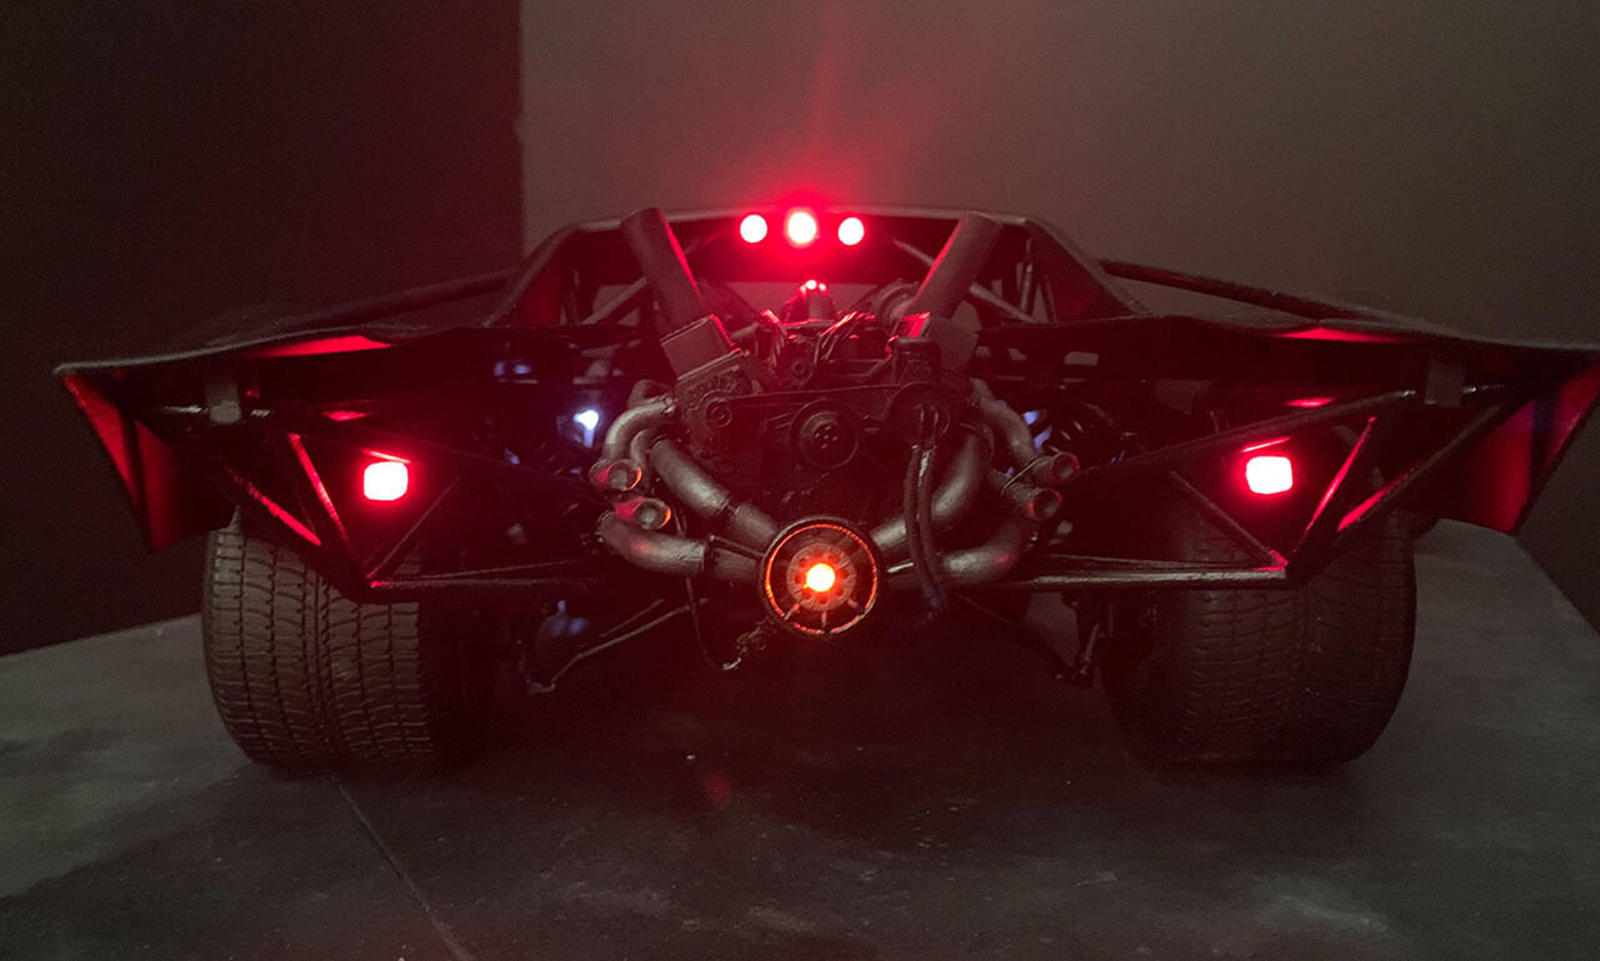 سيارة باتموبيل الجديدة تظهر في إعلان فيلم باتمان القادم 22